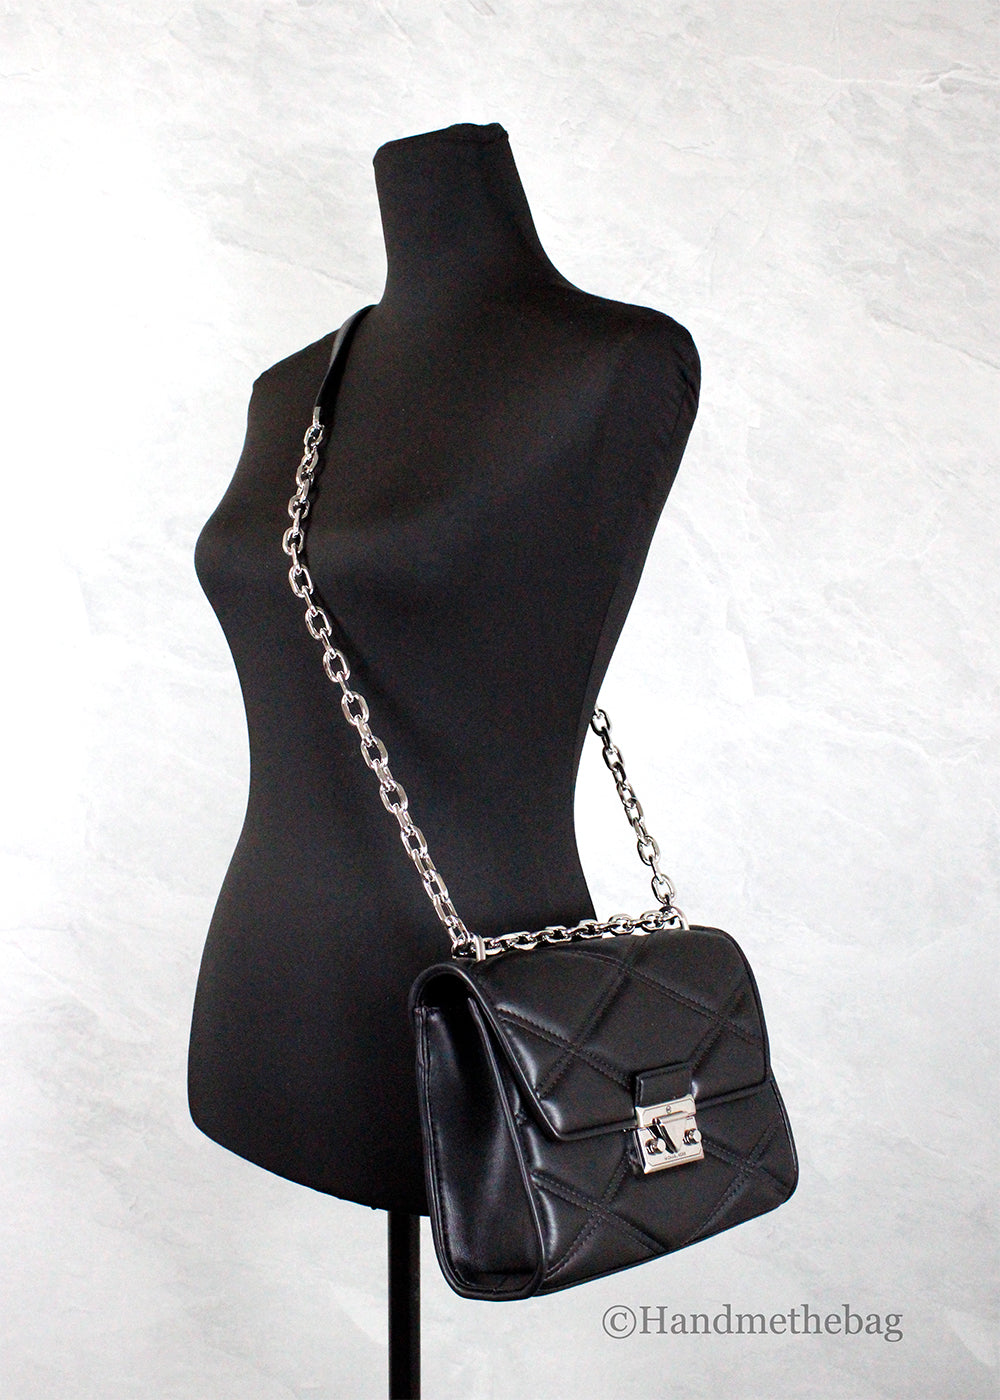 Michael Kors Serena Black Quilted Leather Shoulder Bag